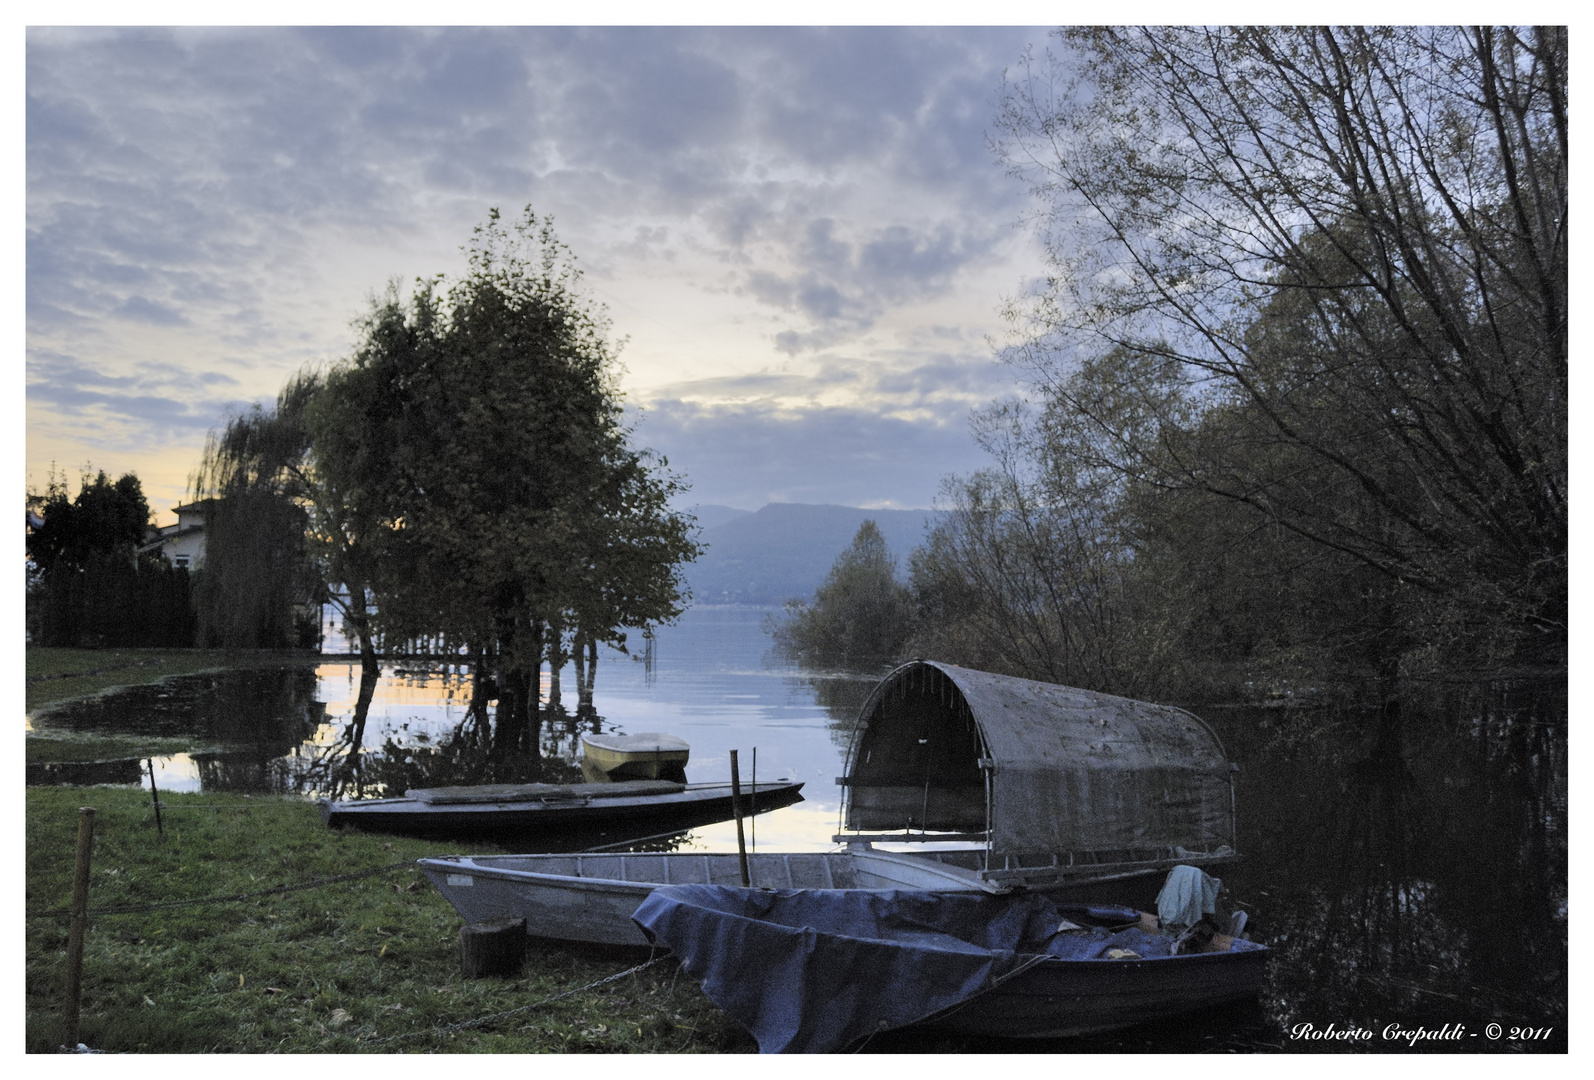 Barche a Monvalle, foce fiume Monvallina - Lago Maggiore